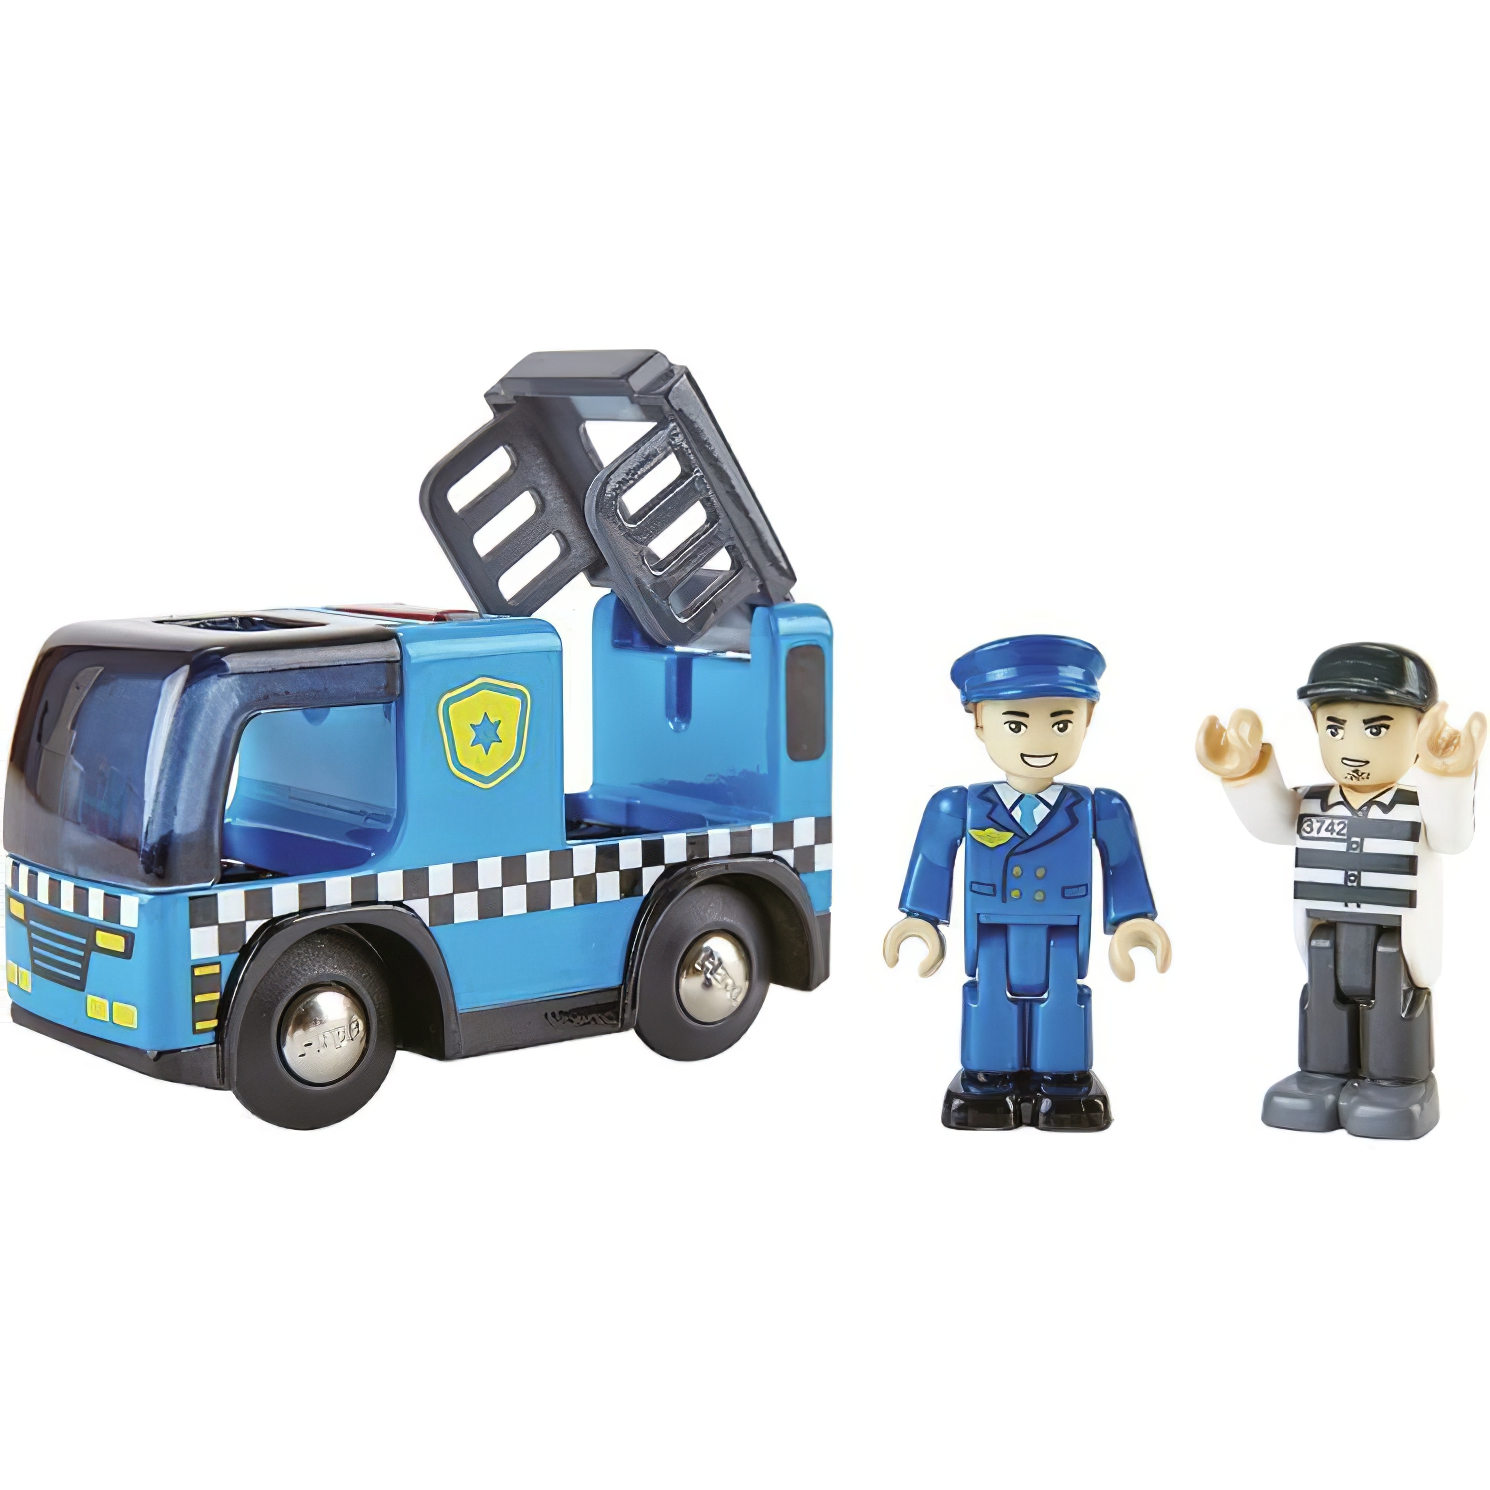 Іграшковий поліцейський автомобіль Hape з фігурками (E3738) - фото 1